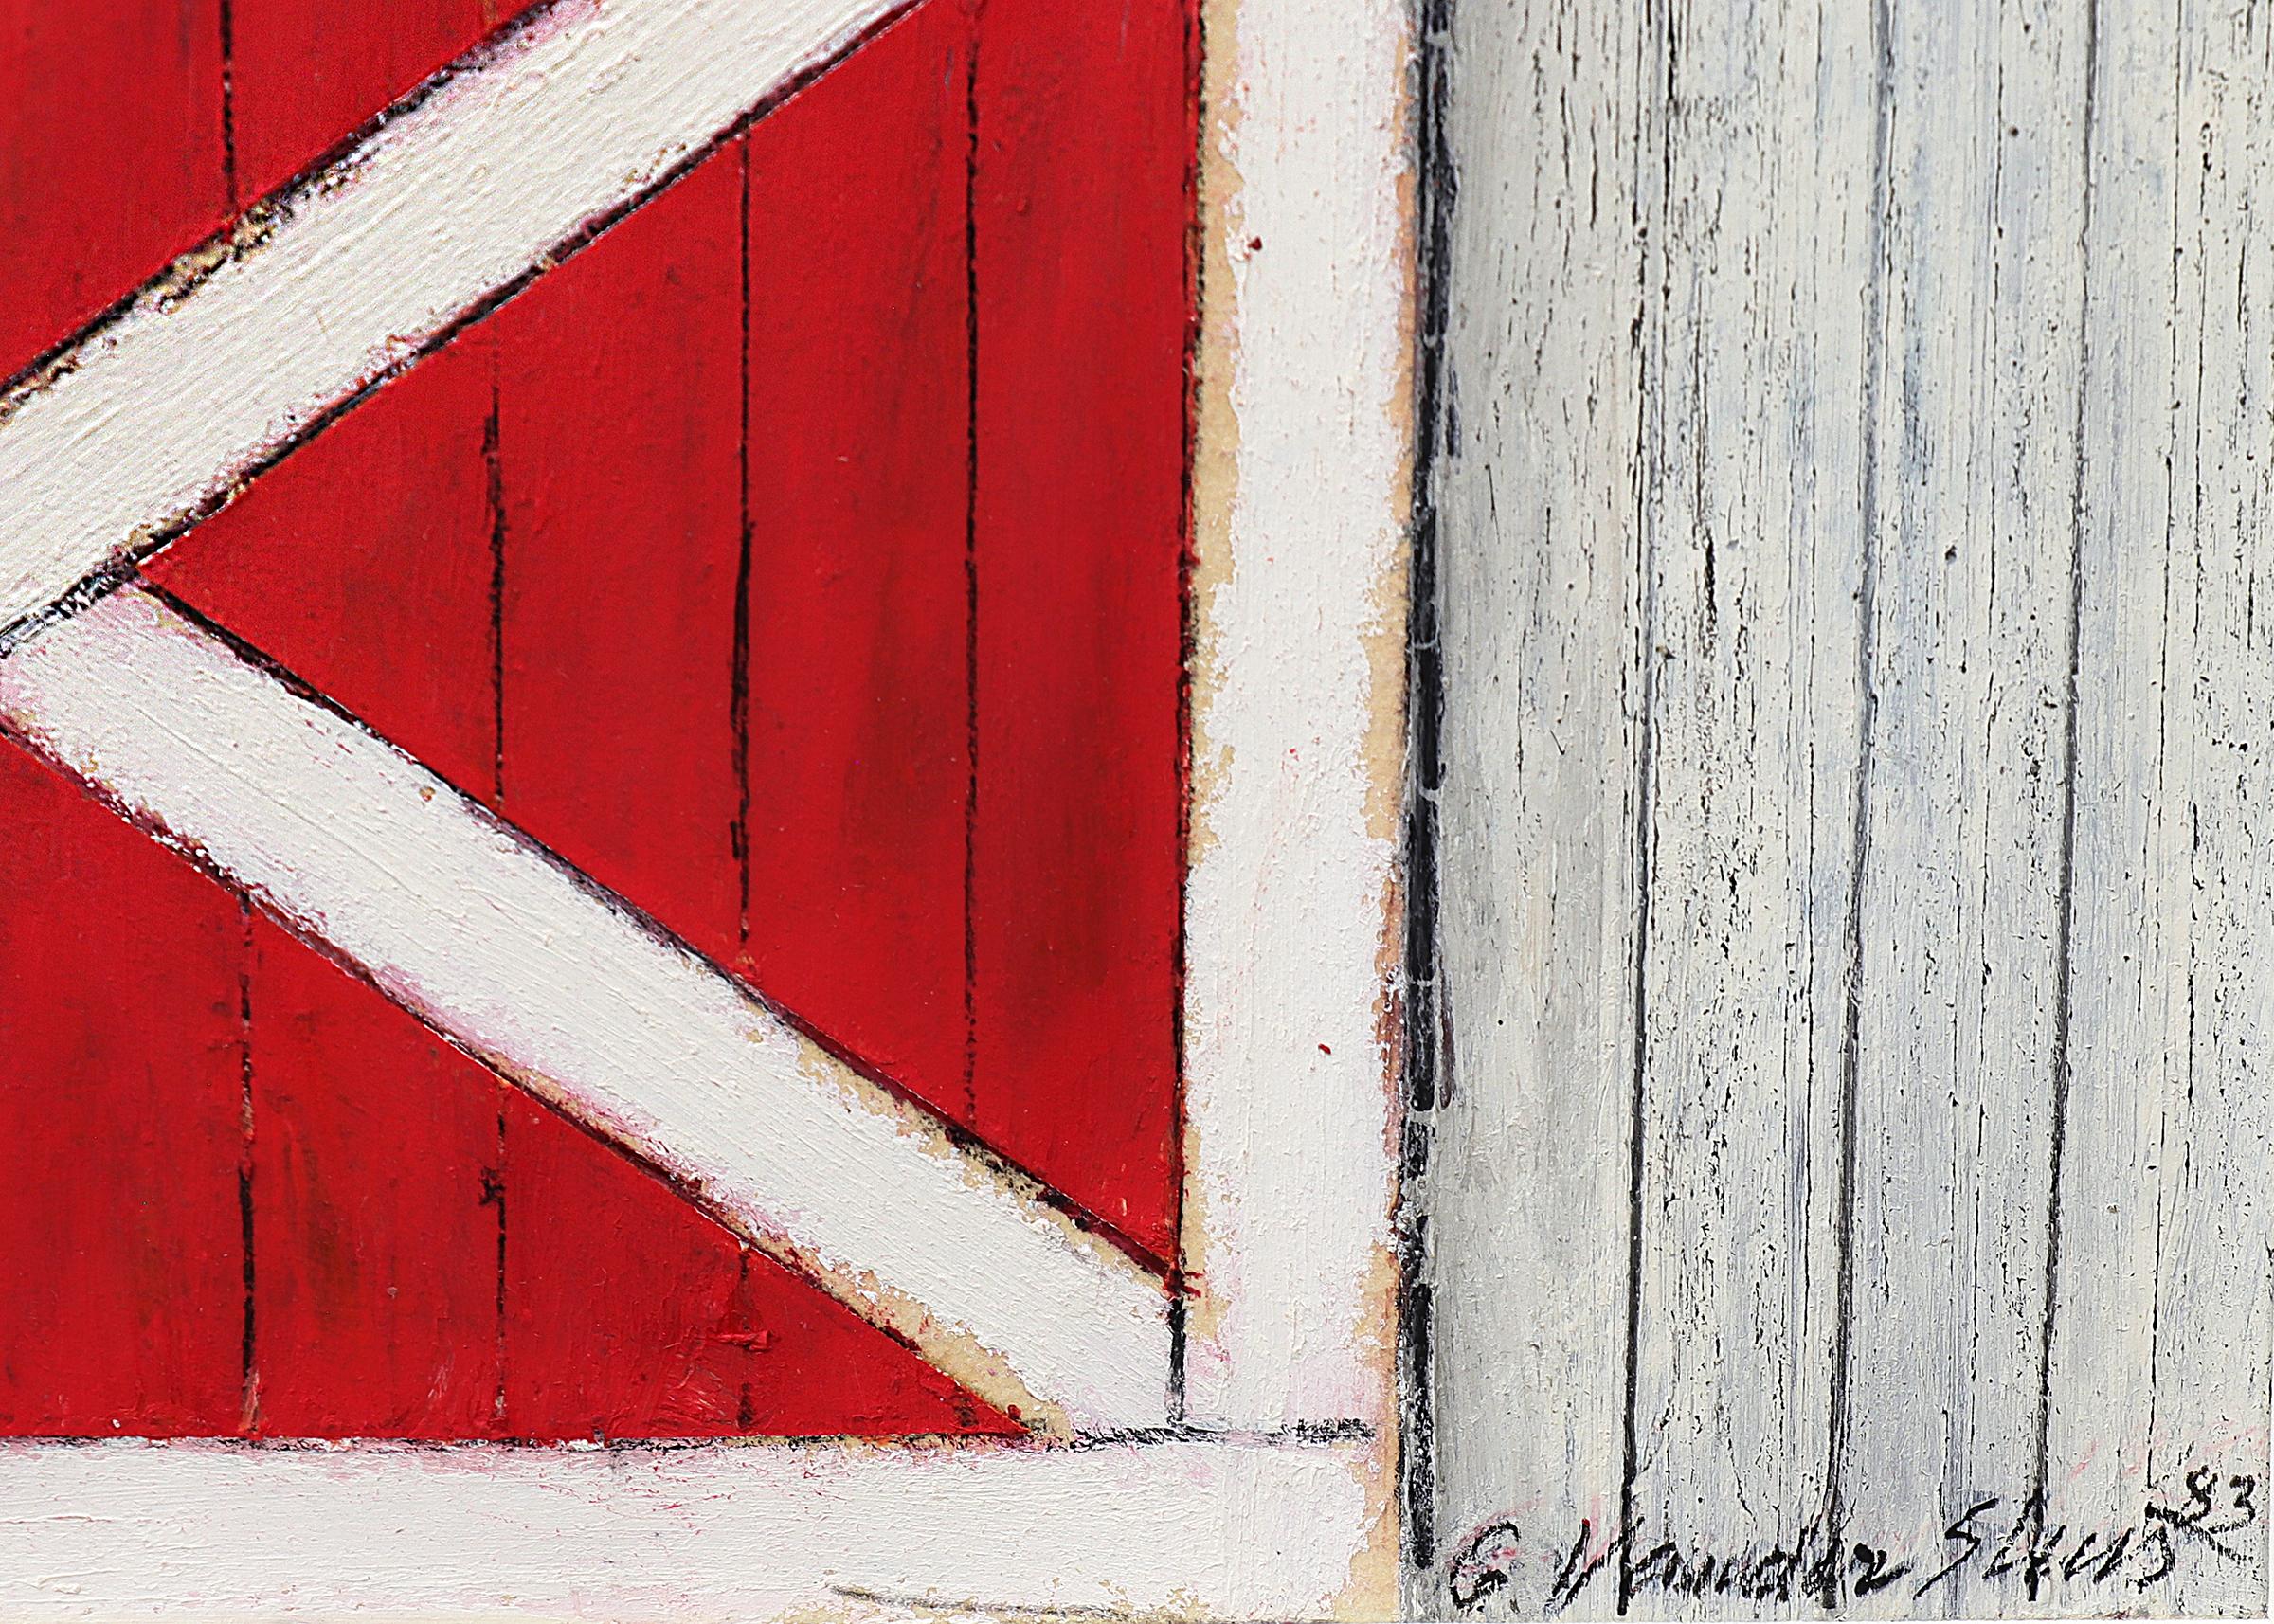 Ölstick-Zeichnung der amerikanischen Moderne, grauer Scheun mit roten Schiebetüren, Landschaft (Amerikanische Moderne), Painting, von George Vander Sluis